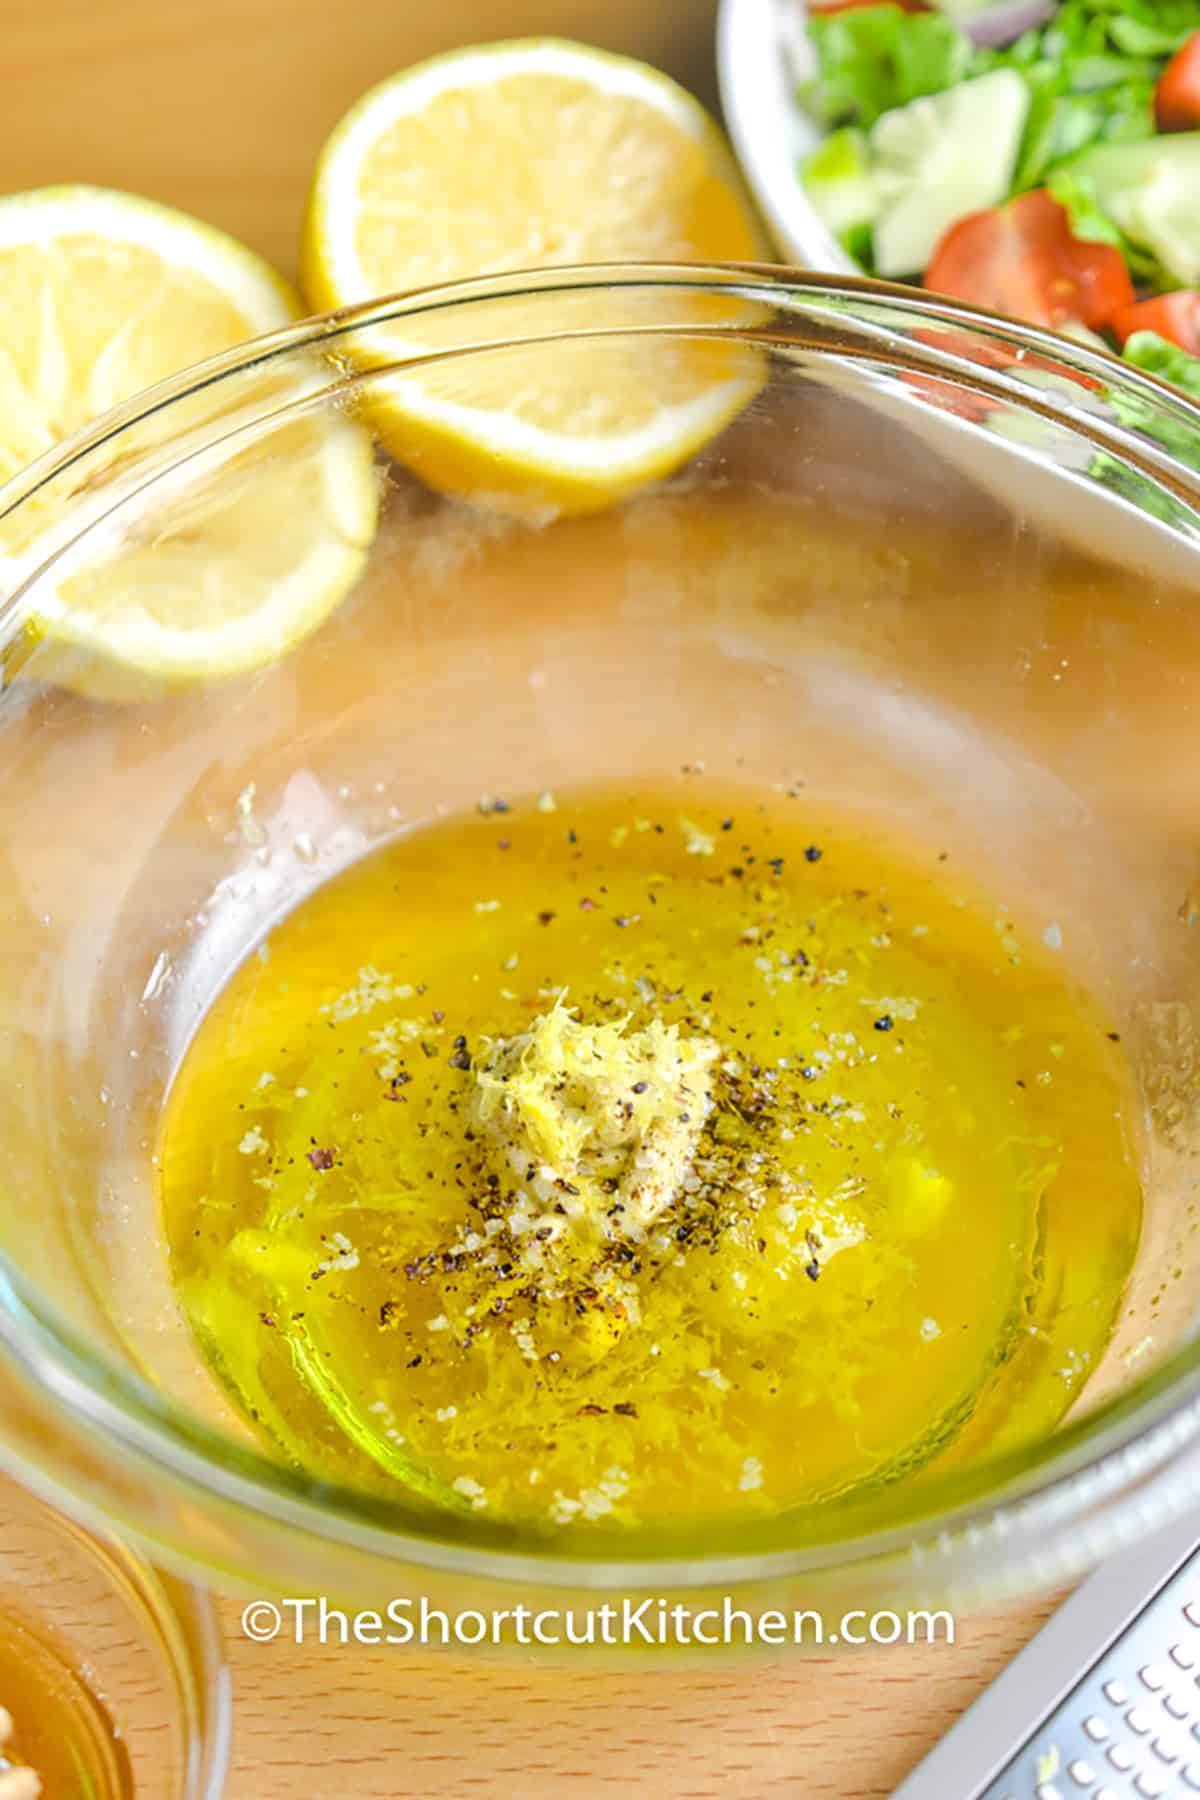 adding ingredients together to make Lemon Vinaigrette